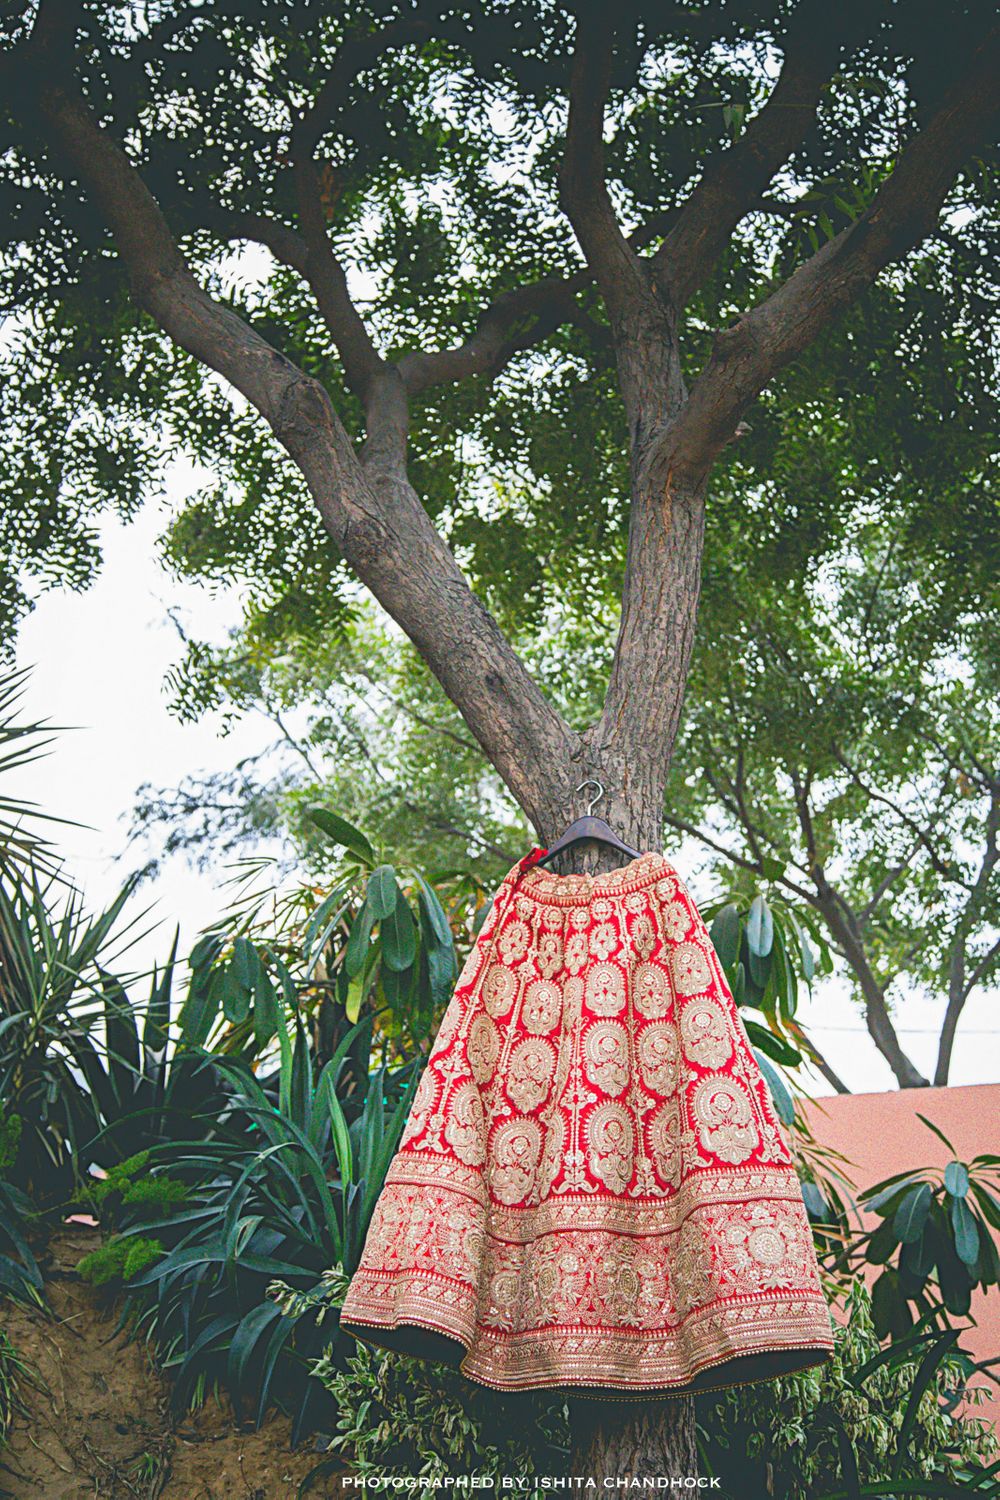 Photo of Red Lehenga with Gold Zardozi Work on Hanger on Tree